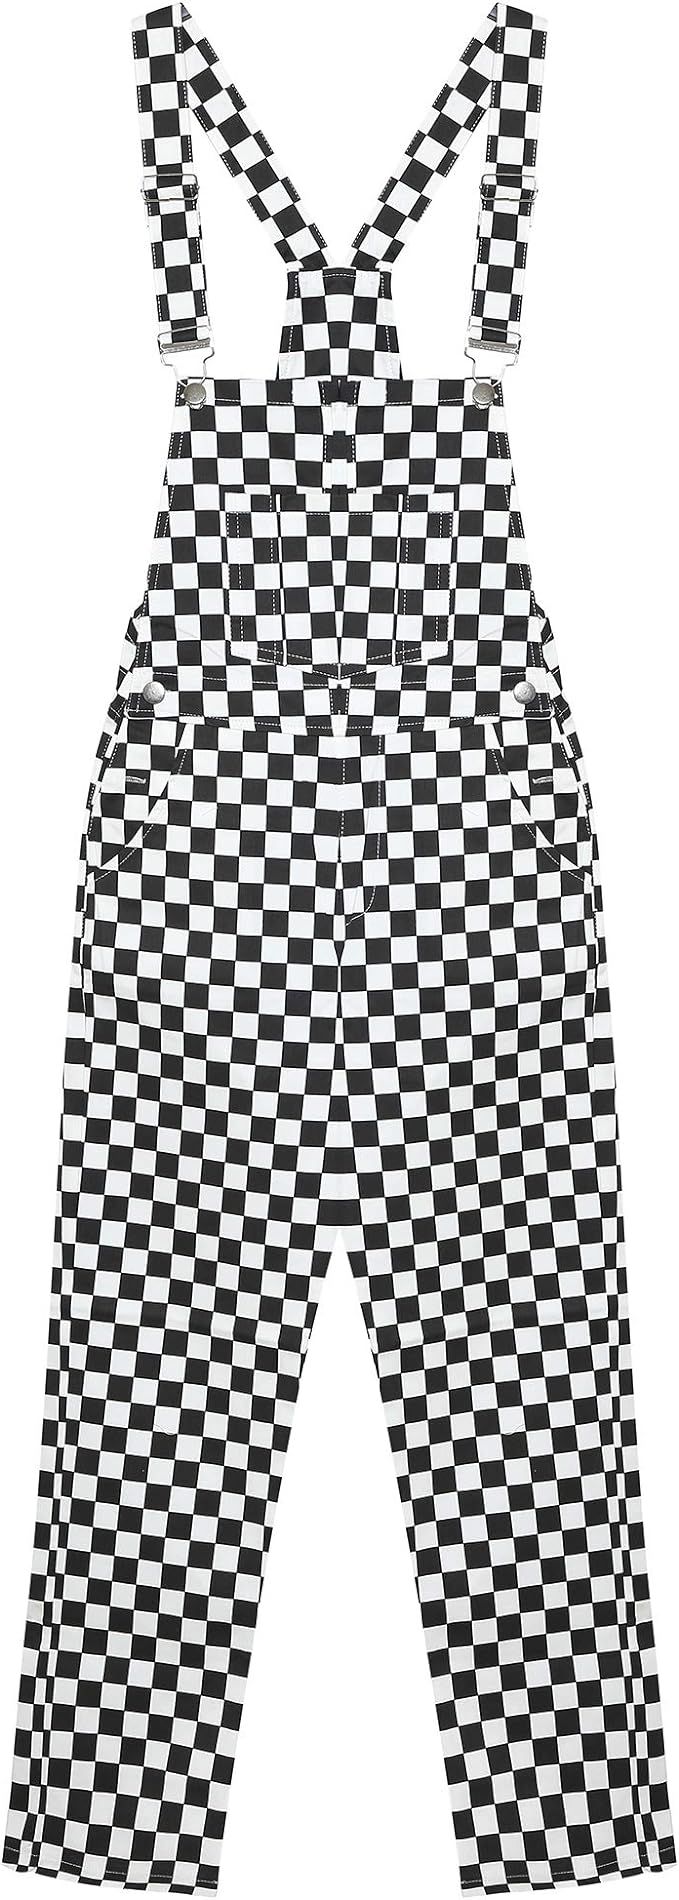 Women's Classic Checkerboard Bib Overalls - Black & White Plaid | Amazon (US)